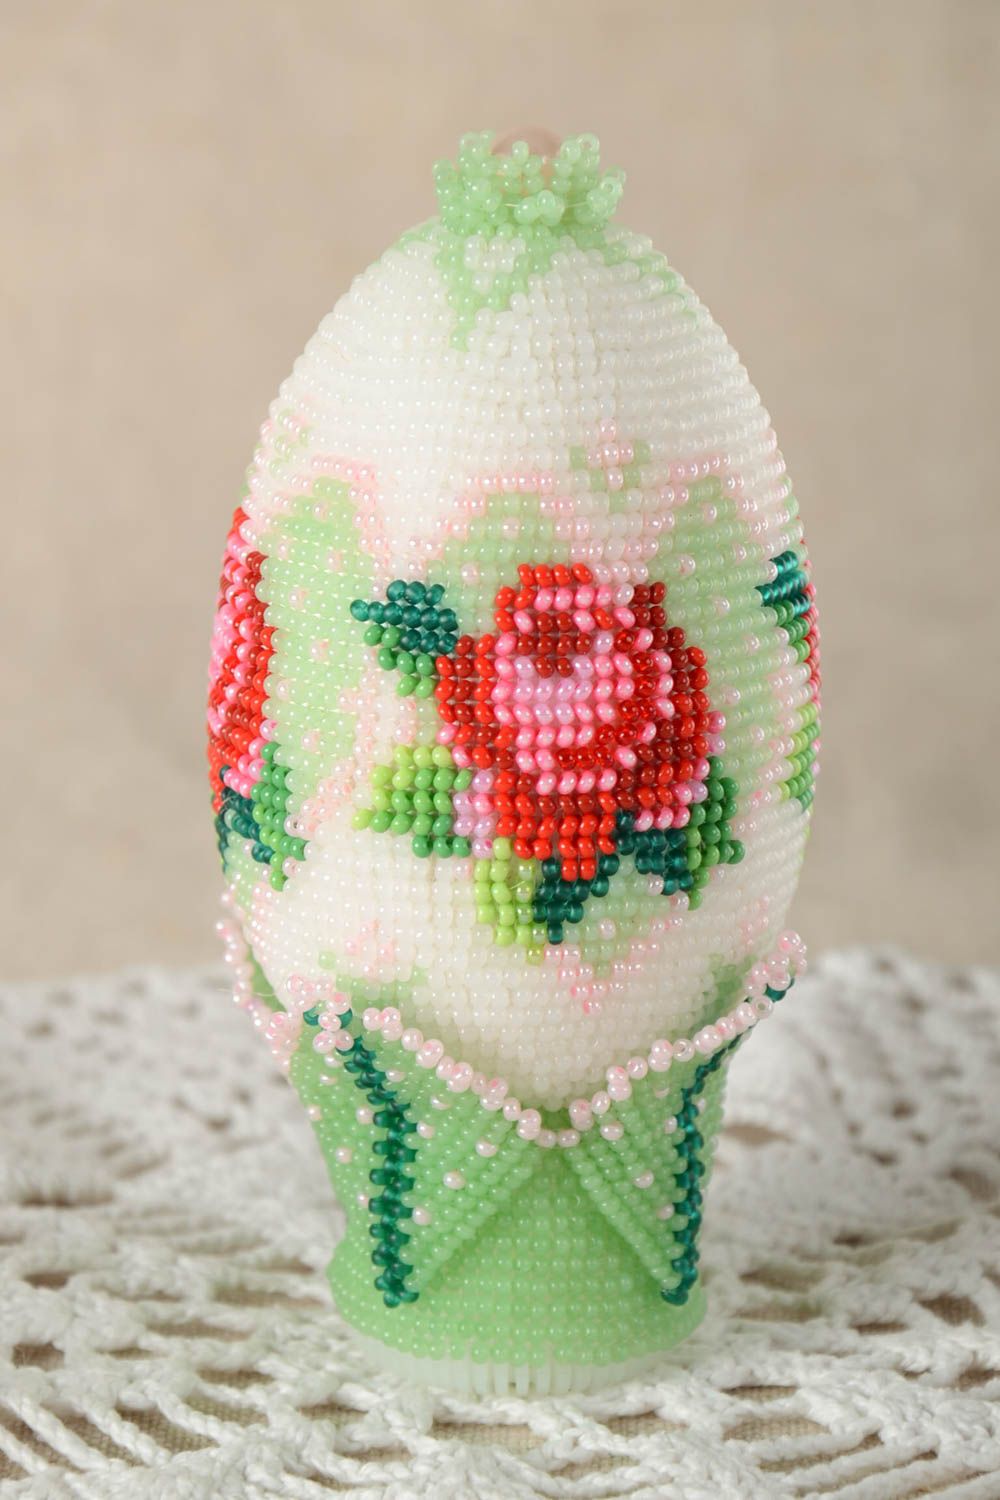 Декоративный элемент ручной работы яйцо из бисера предмет интерьера подарок  фото 1